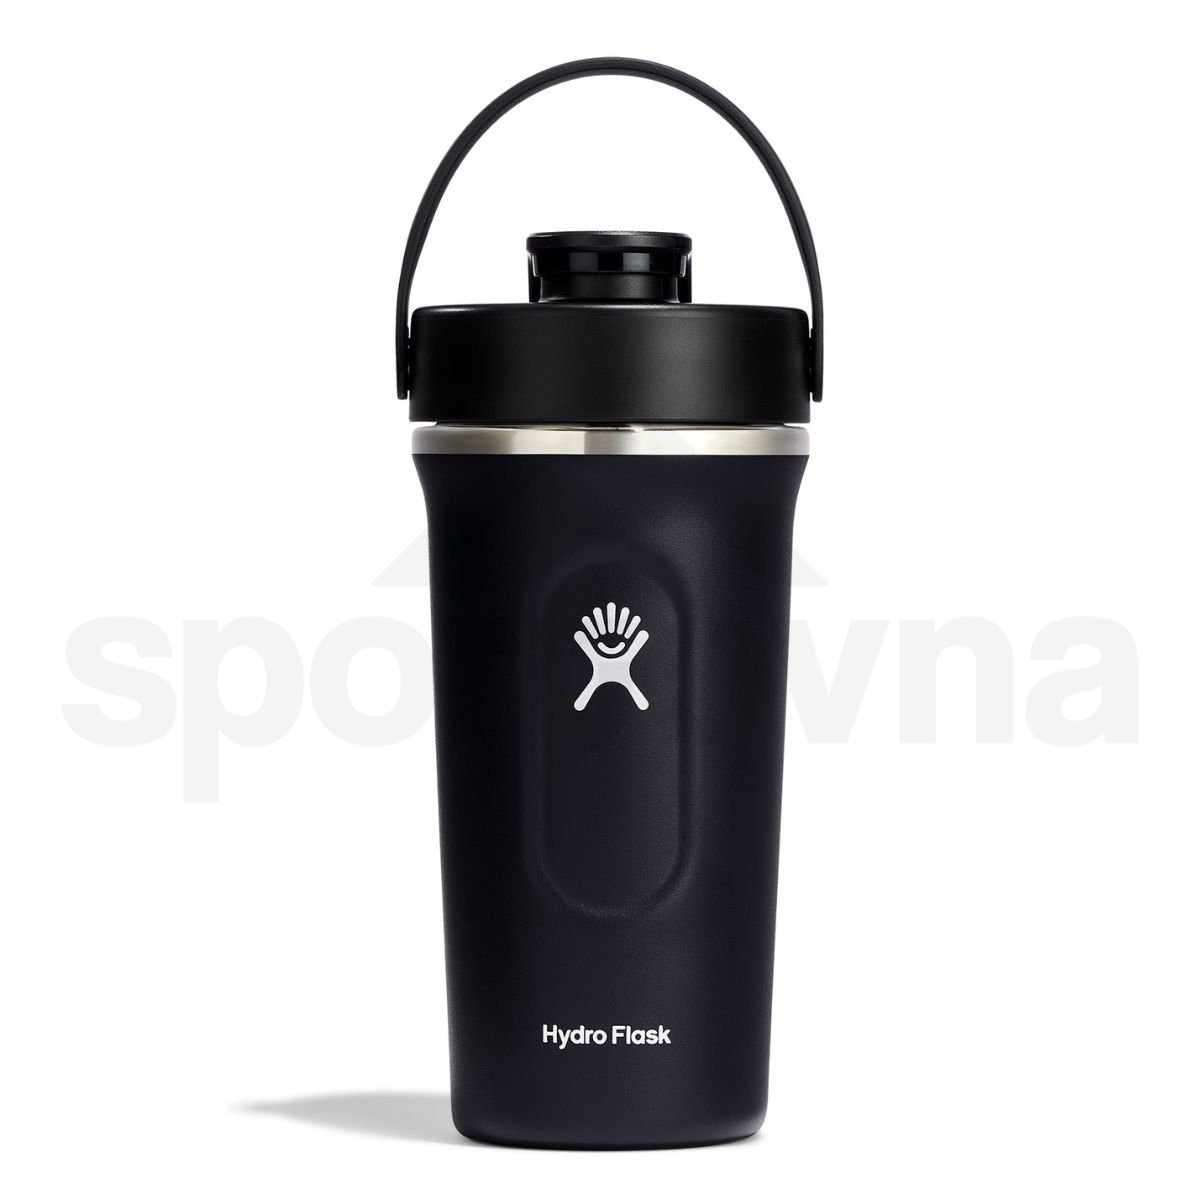 Termoska Hydro Flask 24 oz (710ml) Insulated Shaker Bottle - černá